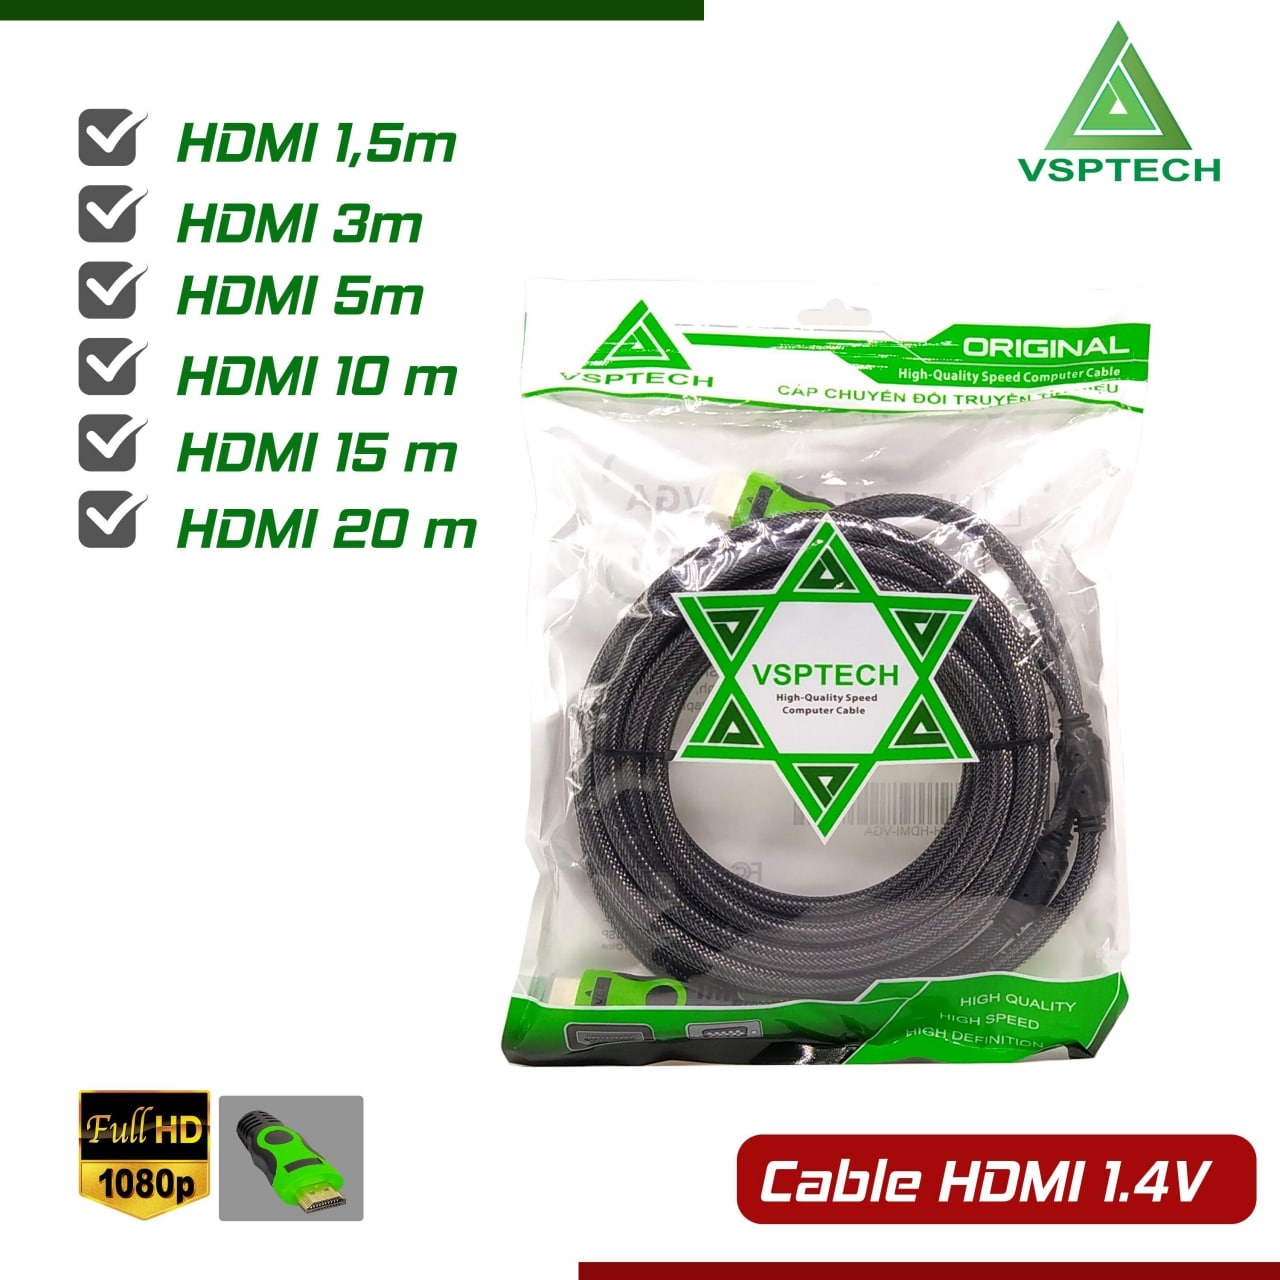 Cable HDMI 10m VSPTECH Dây dù tròn Chống nhiễu